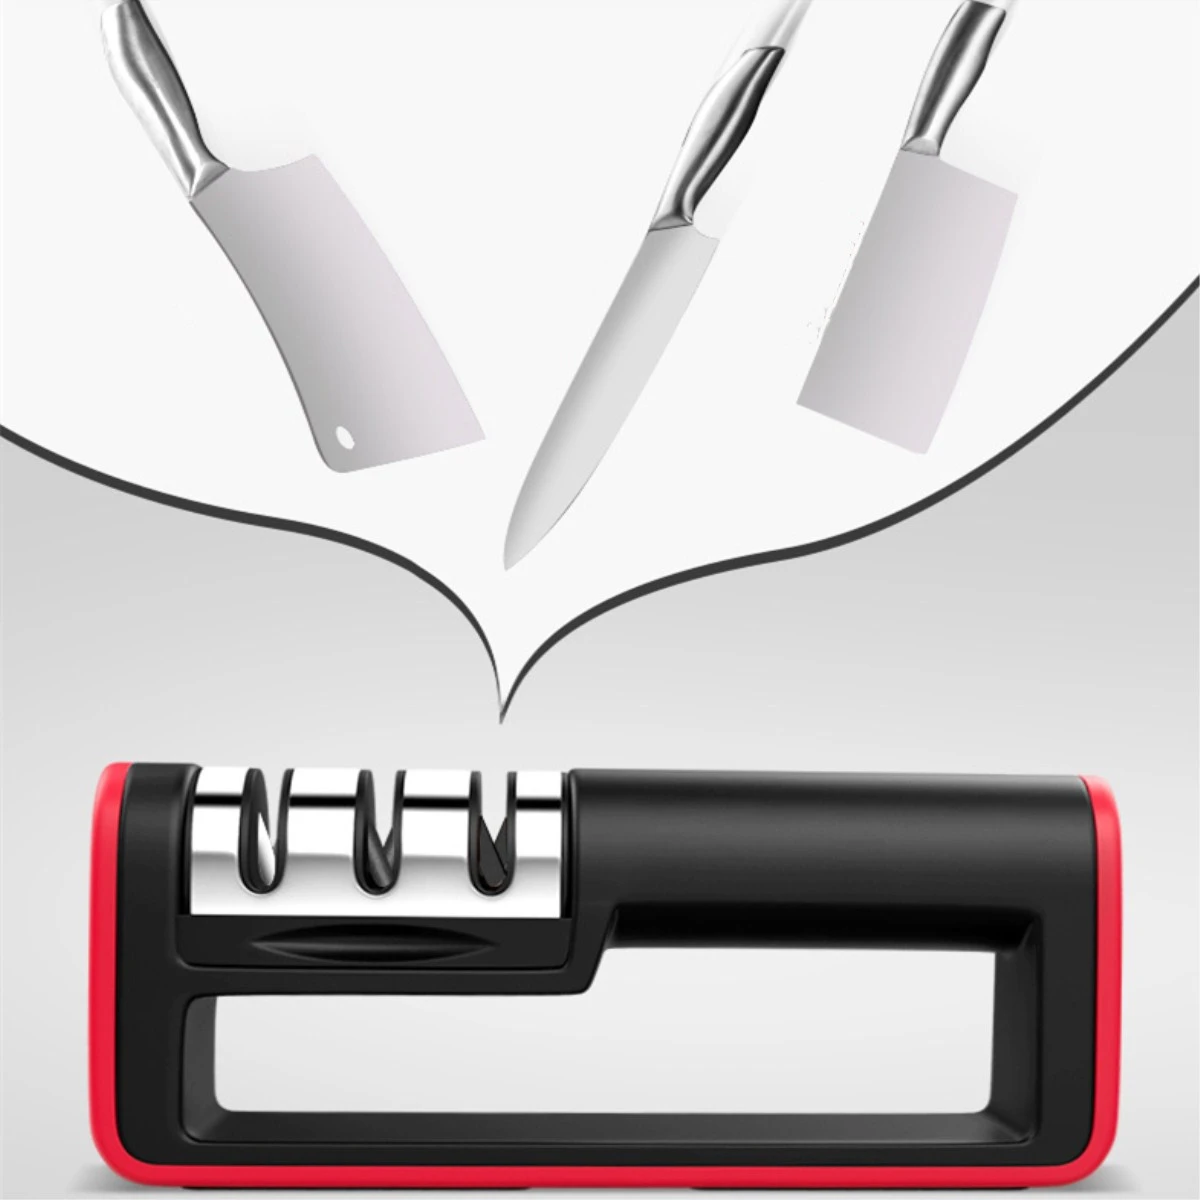 3 этапа Профессиональный Ножи точилка Заточка шлифовального станка точилка для ножей Вольфрам алмаз керамика точильные инструменты